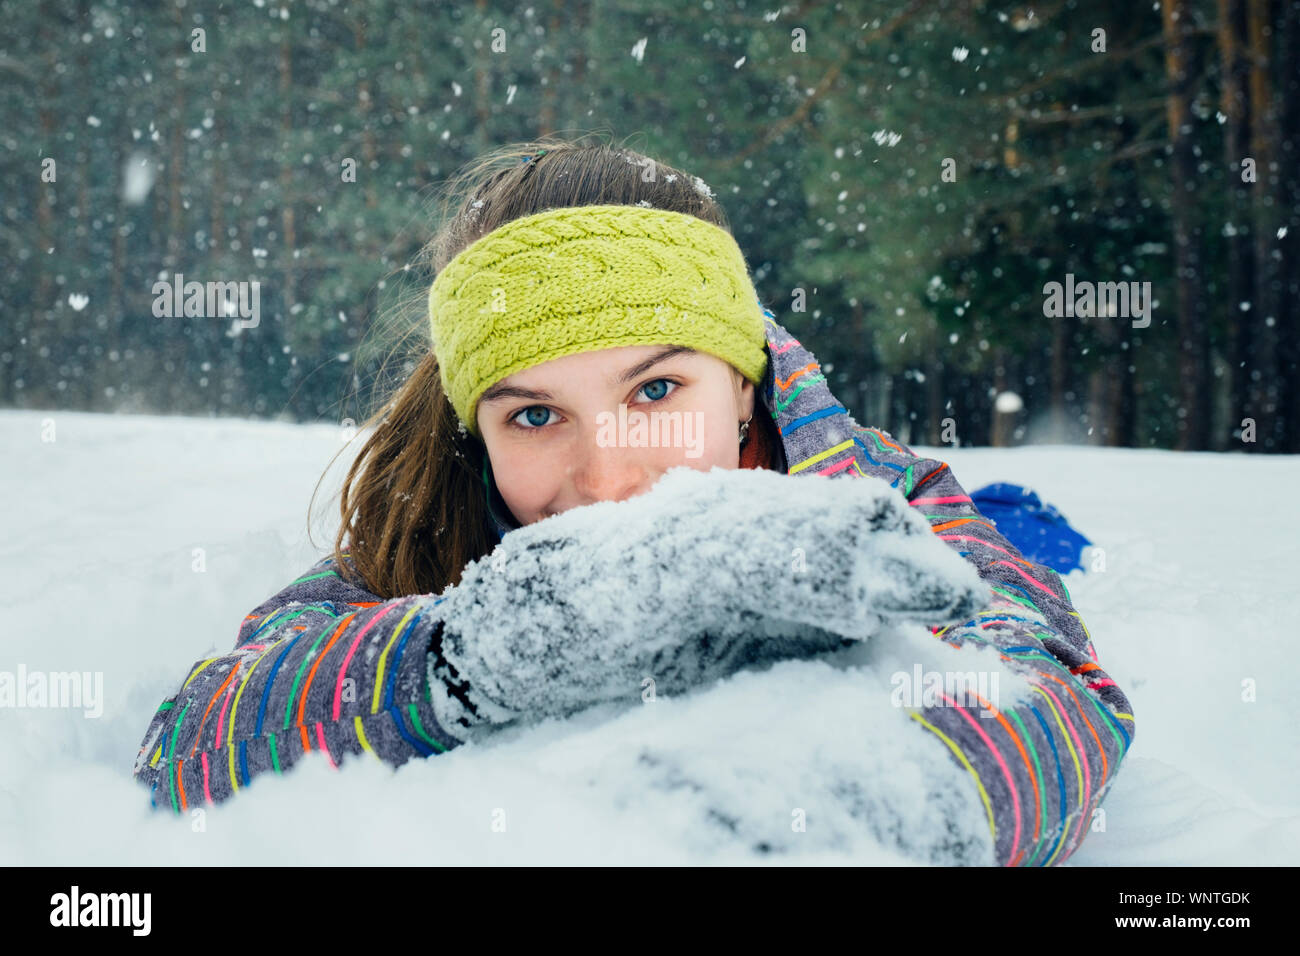 La niña se encuentra en la nieve y sonrisas Foto de stock